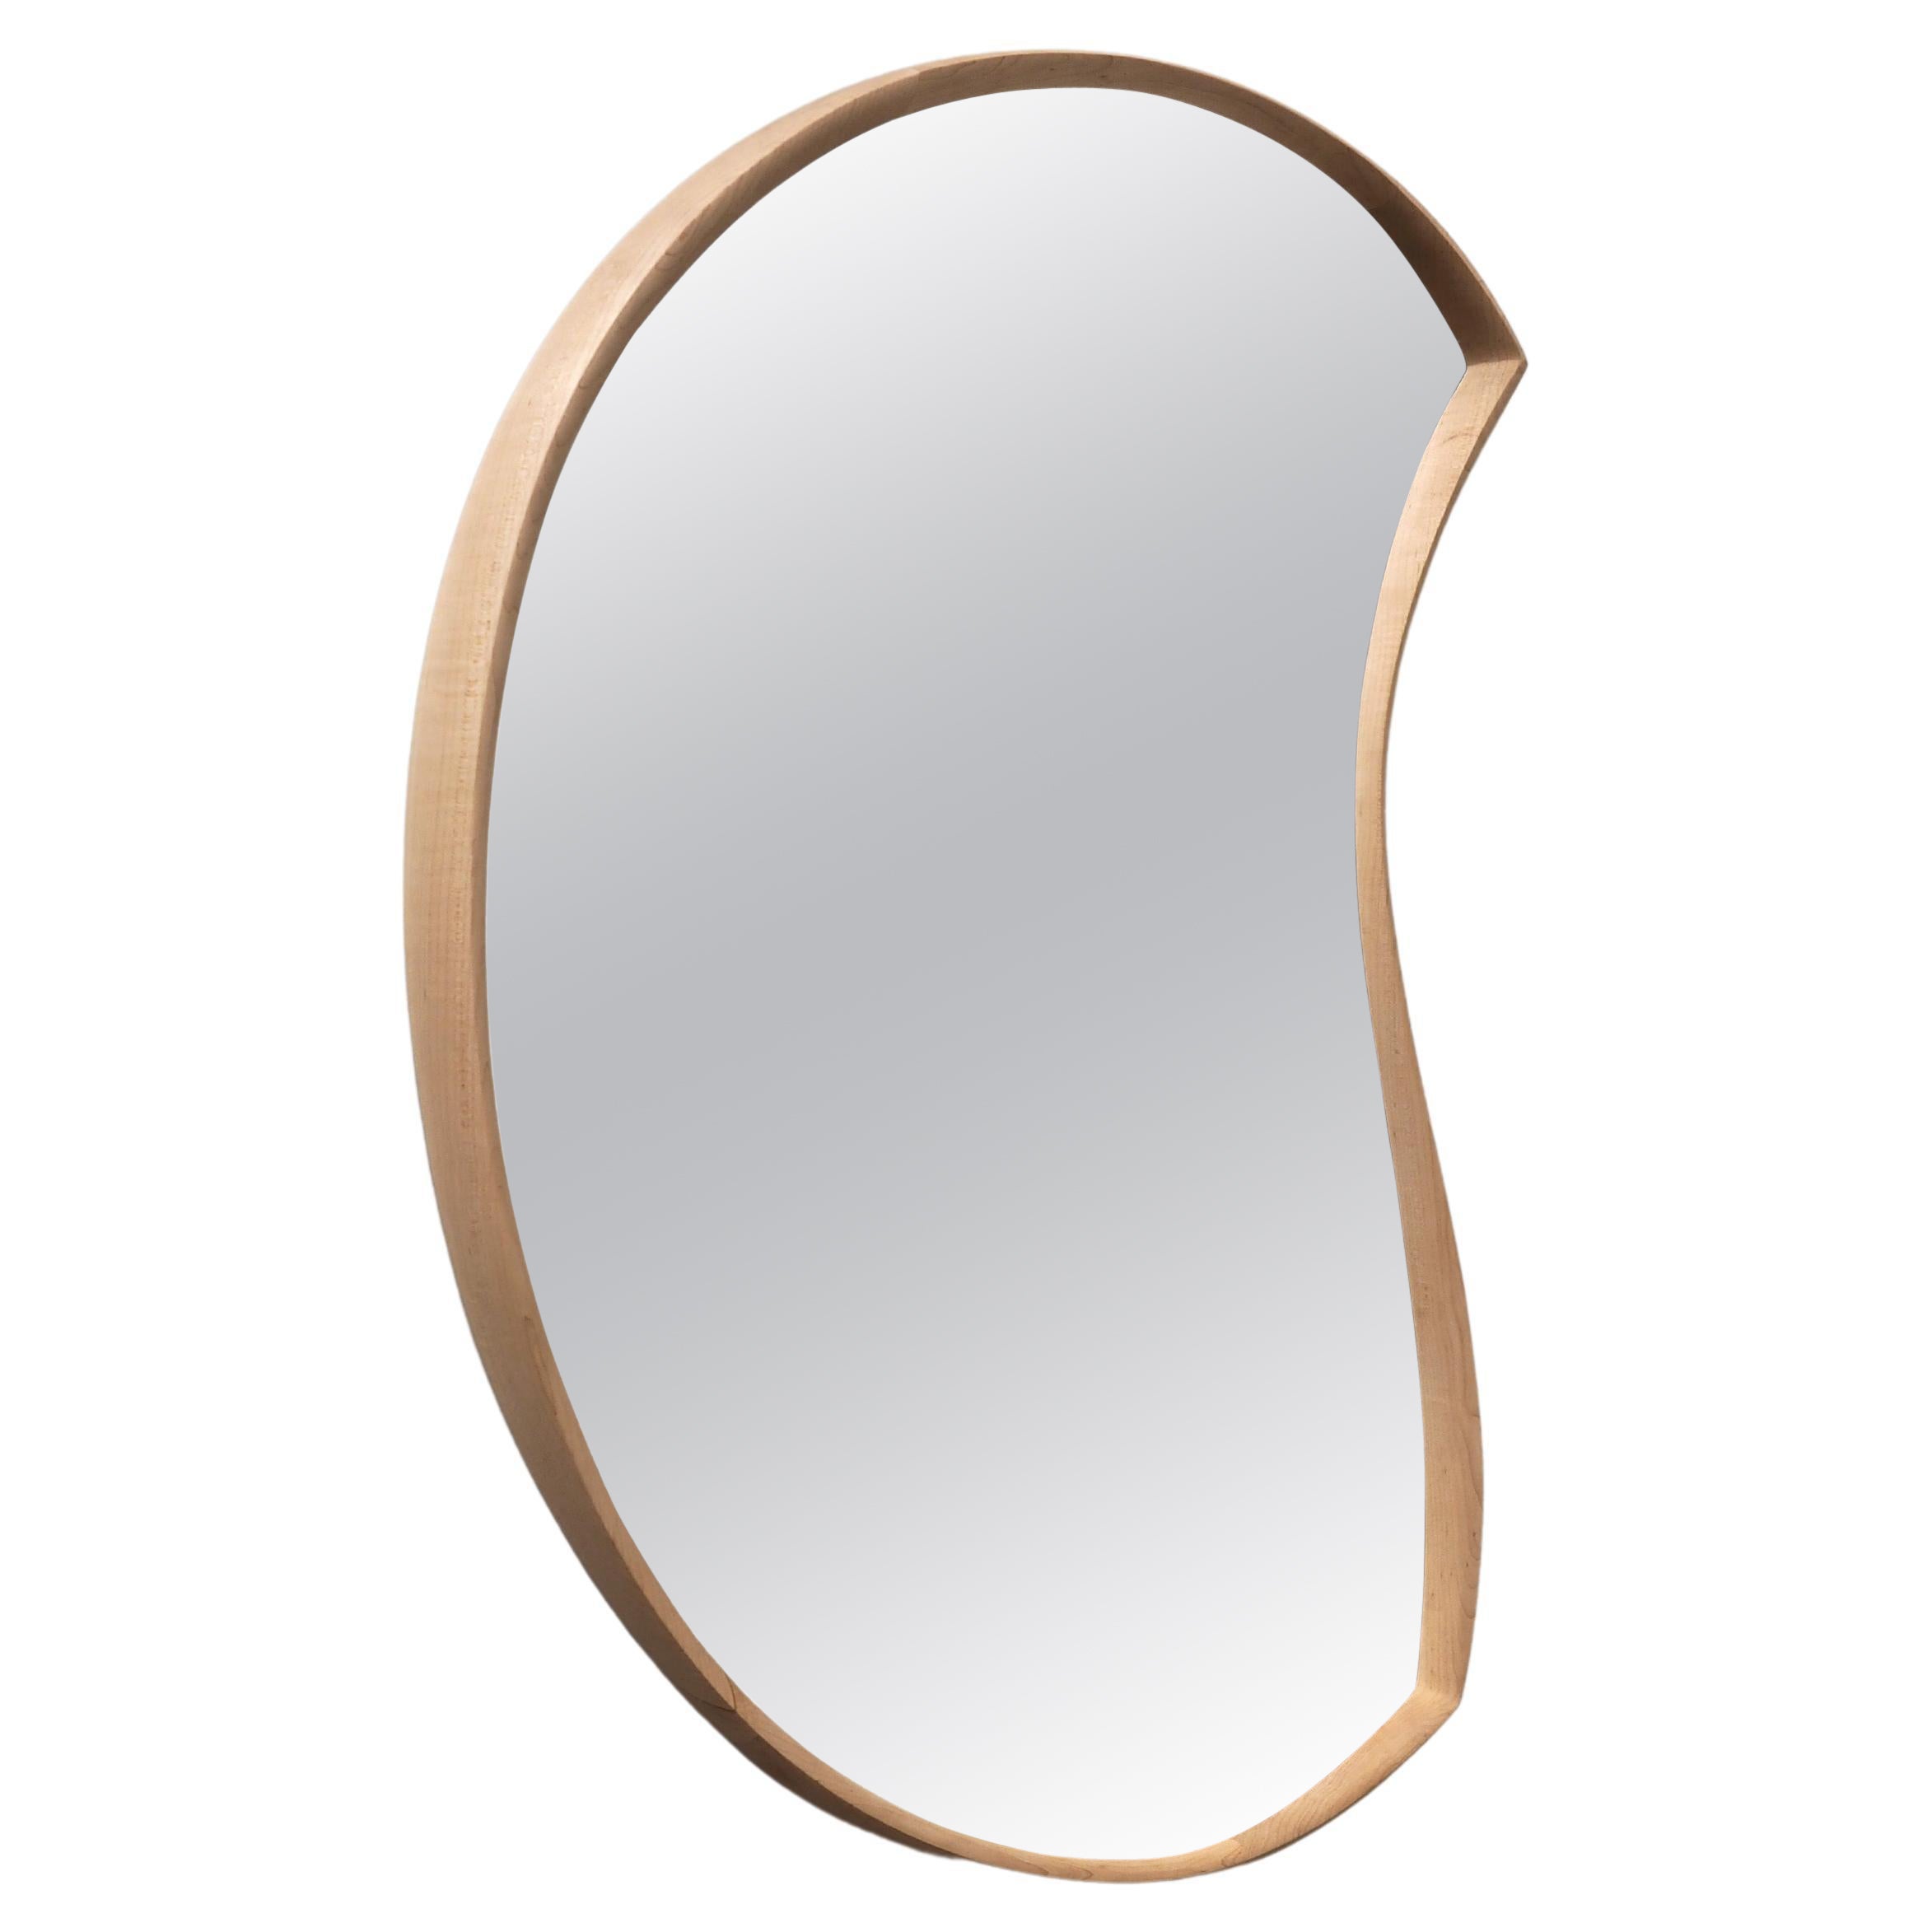 Asymmetric Wood Mirror, Biophilic Moon Mirror by Soo Joo 